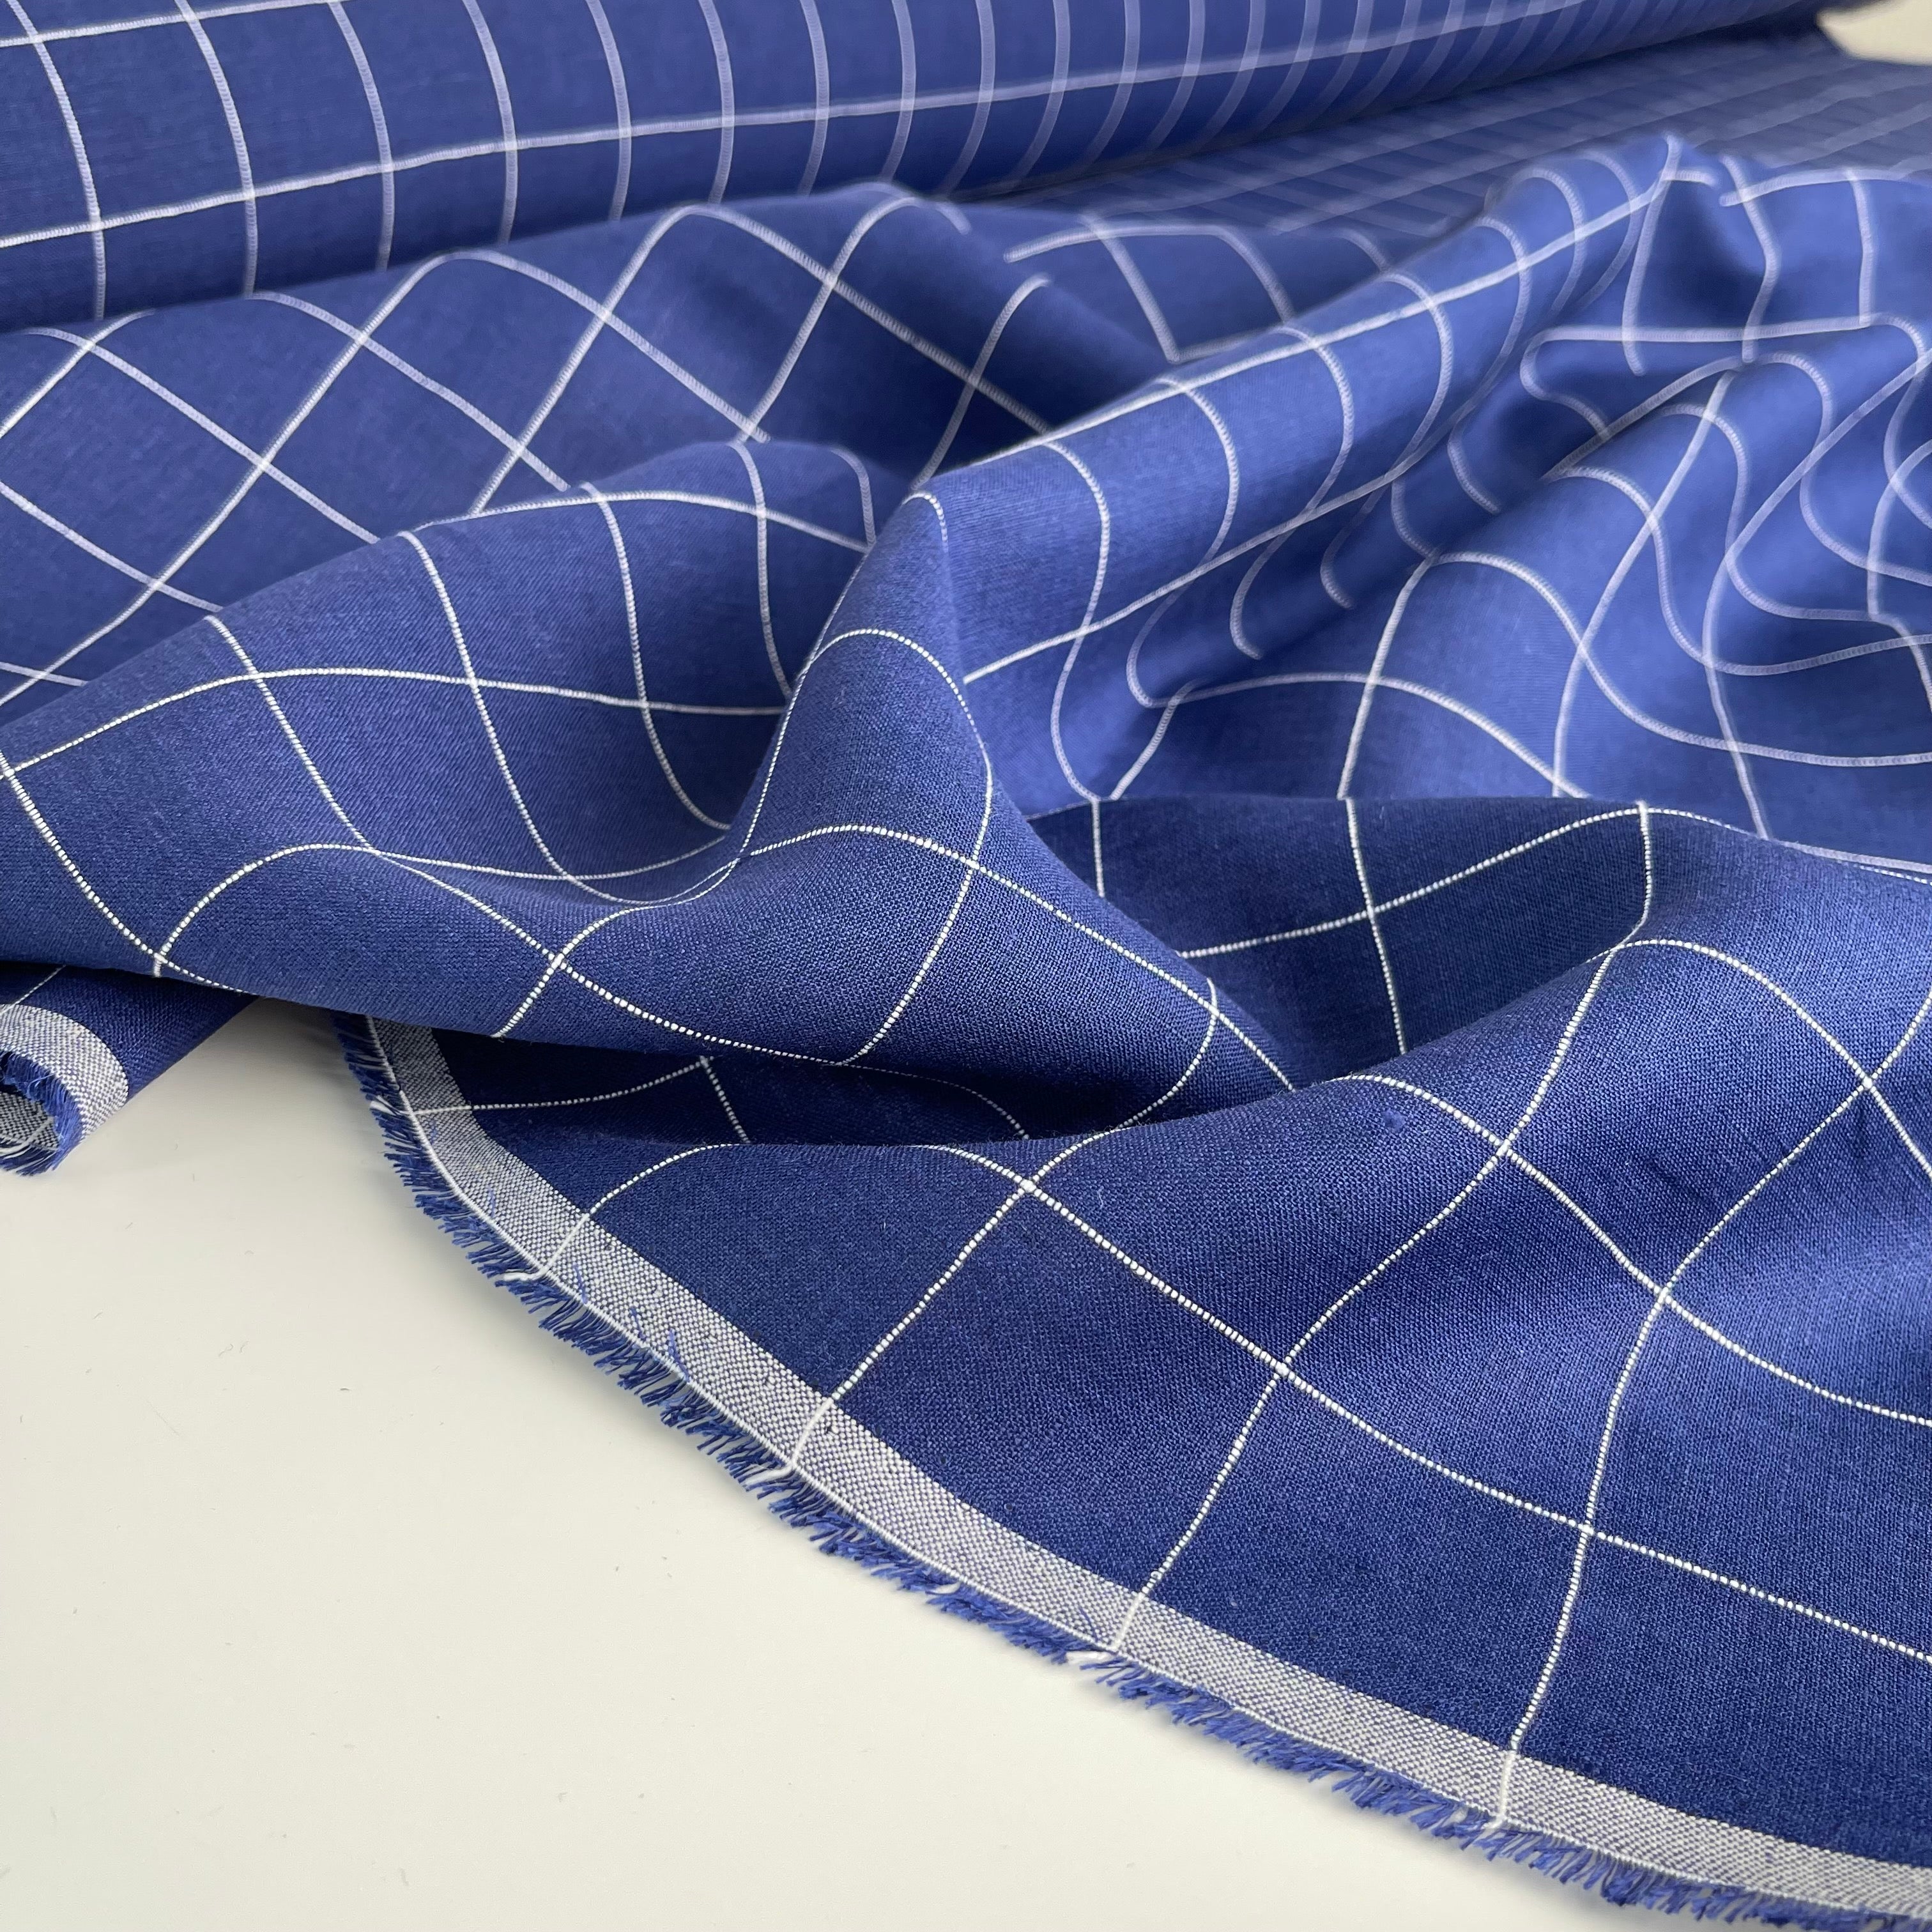 REMNANT 0.67 Metre - Monochrome Checks Cobalt Blue Linen Fabric